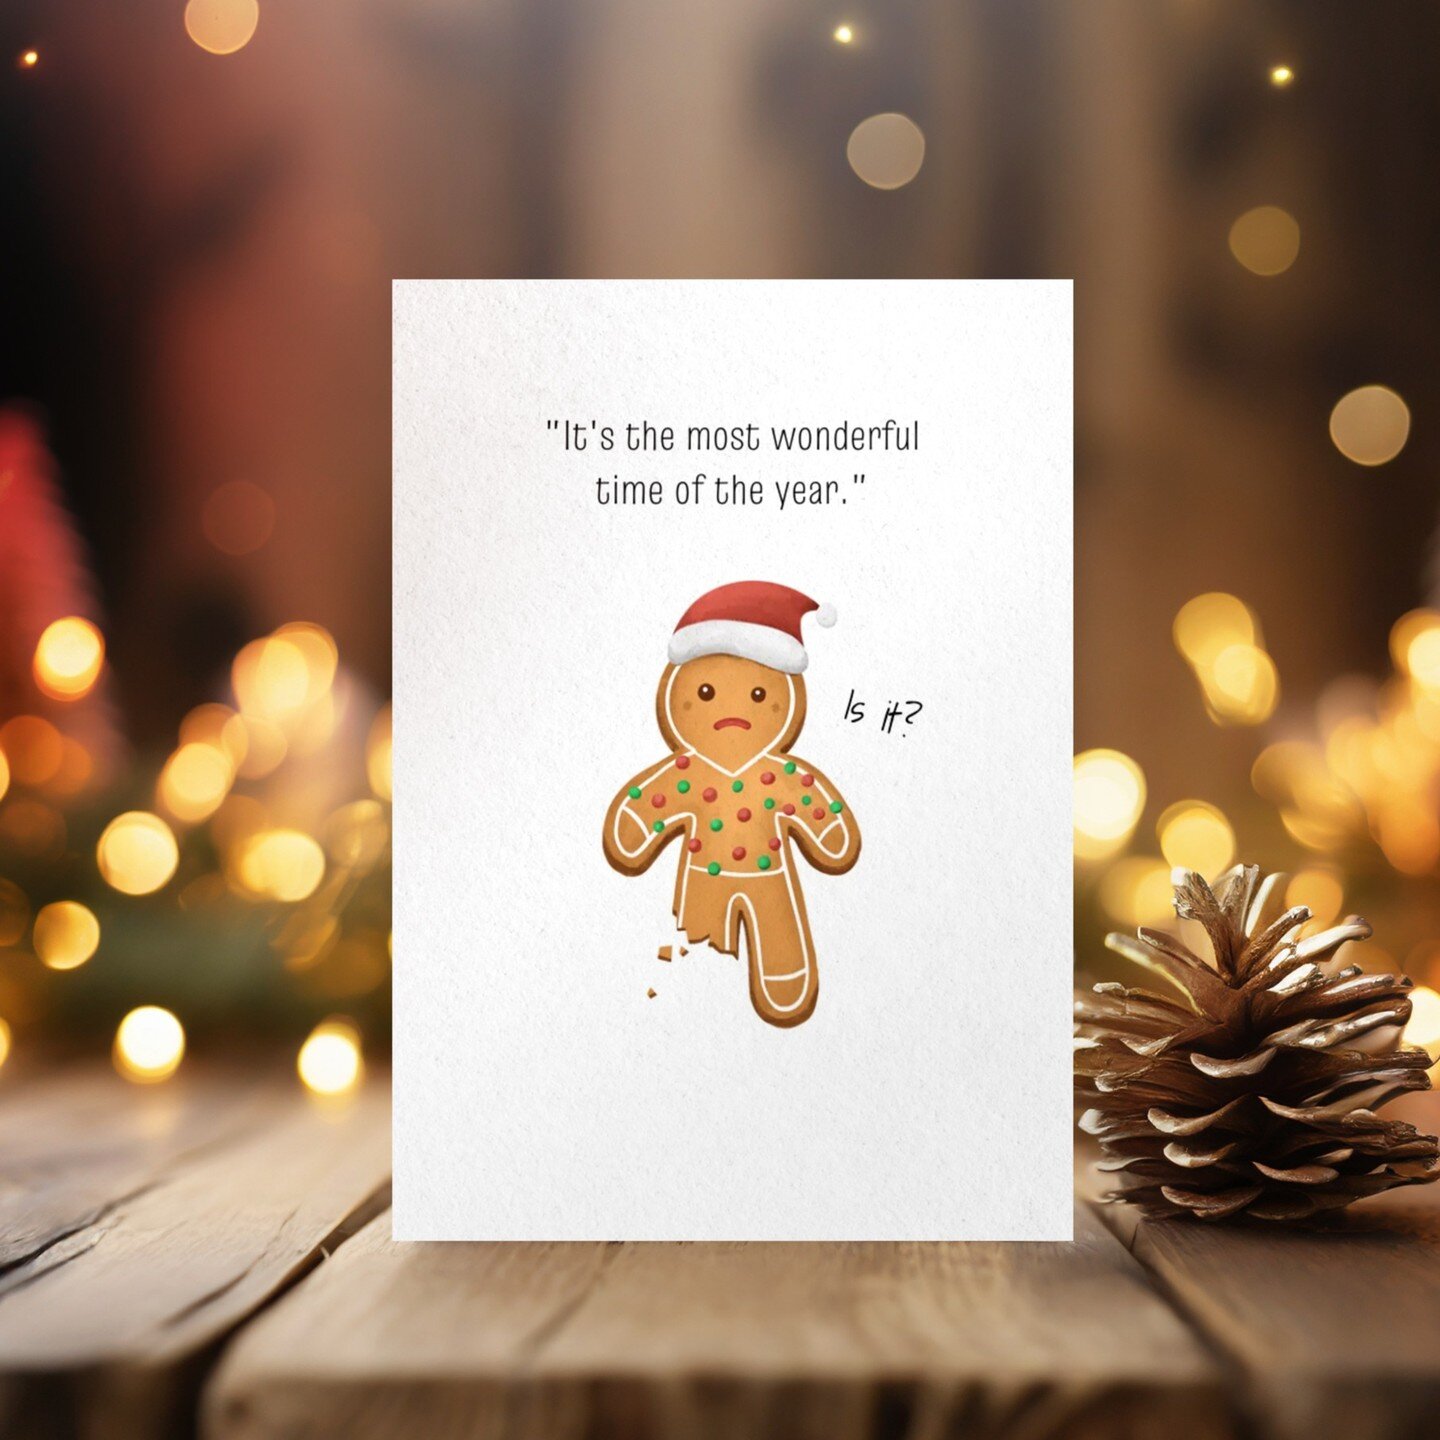 Vind jij het ook altijd lastig om die schattige gingerbreadmannetjes op te eten? ;-)

#kerstkaarten #nieuwekerstkaarten #grappigekerstkaart #funnychristmascards #funchristmascards #gingerbreadcookies #gingerbreadman #illustrationartists #koekjes #ker